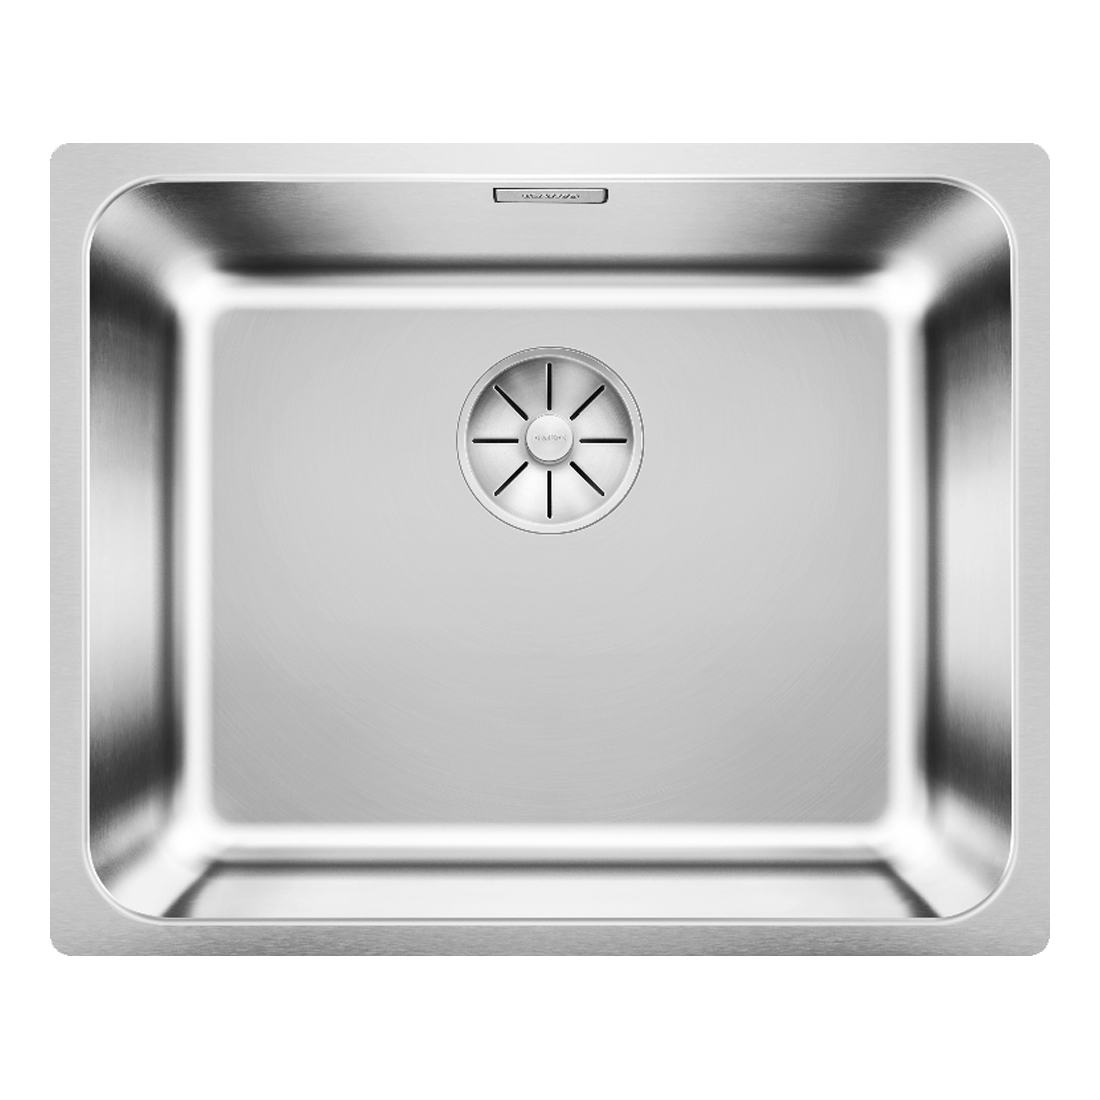 Кухонная мойка Blanco Solis 500-IF полированная сталь кухонная мойка blanco solis 500 u полированная сталь